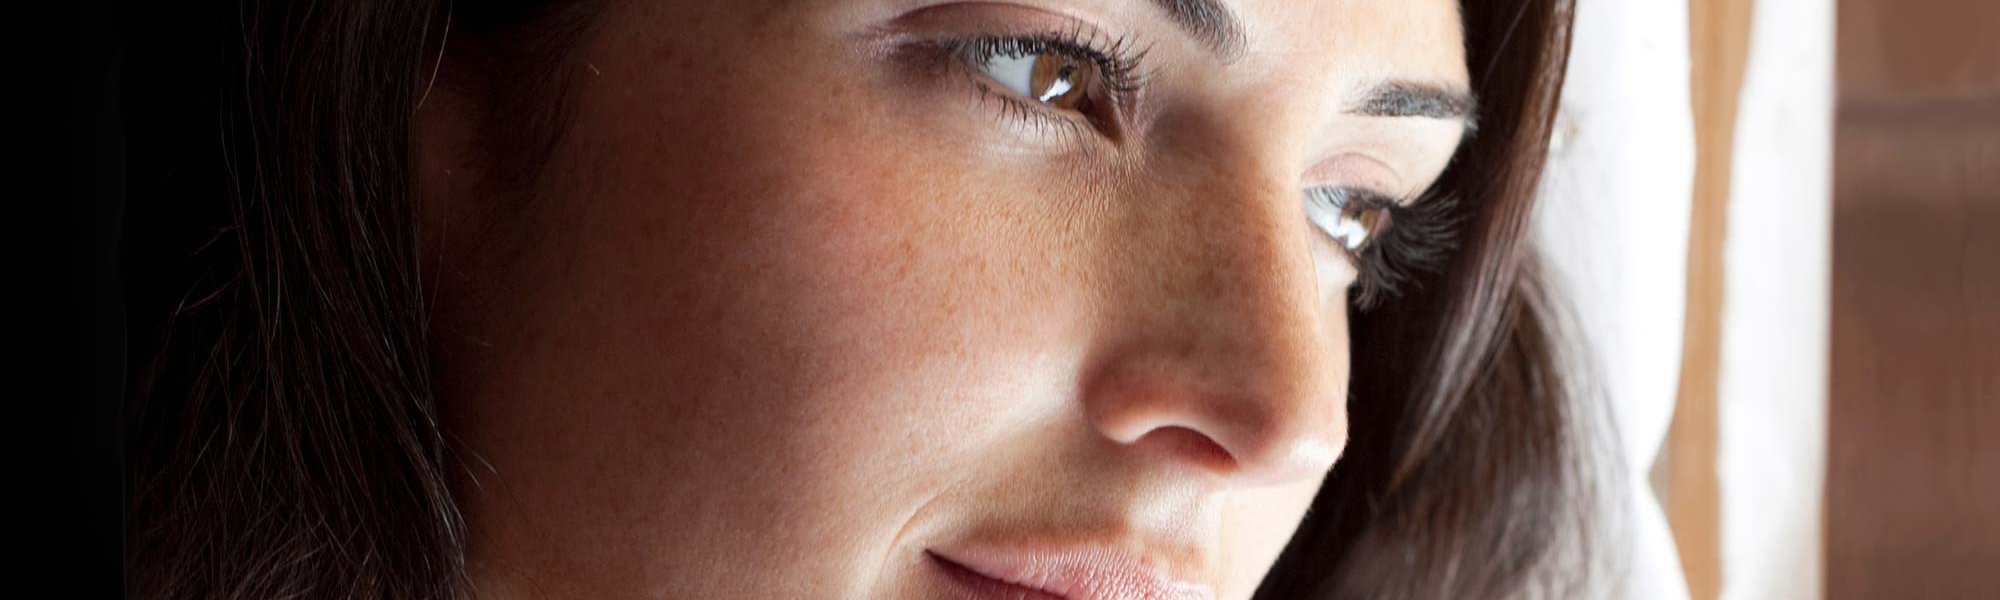 Combate las manchas oscuras de tu cara con la gama antiarrugas y antimanchas Revitalift Laser de L’Oréal Paris.